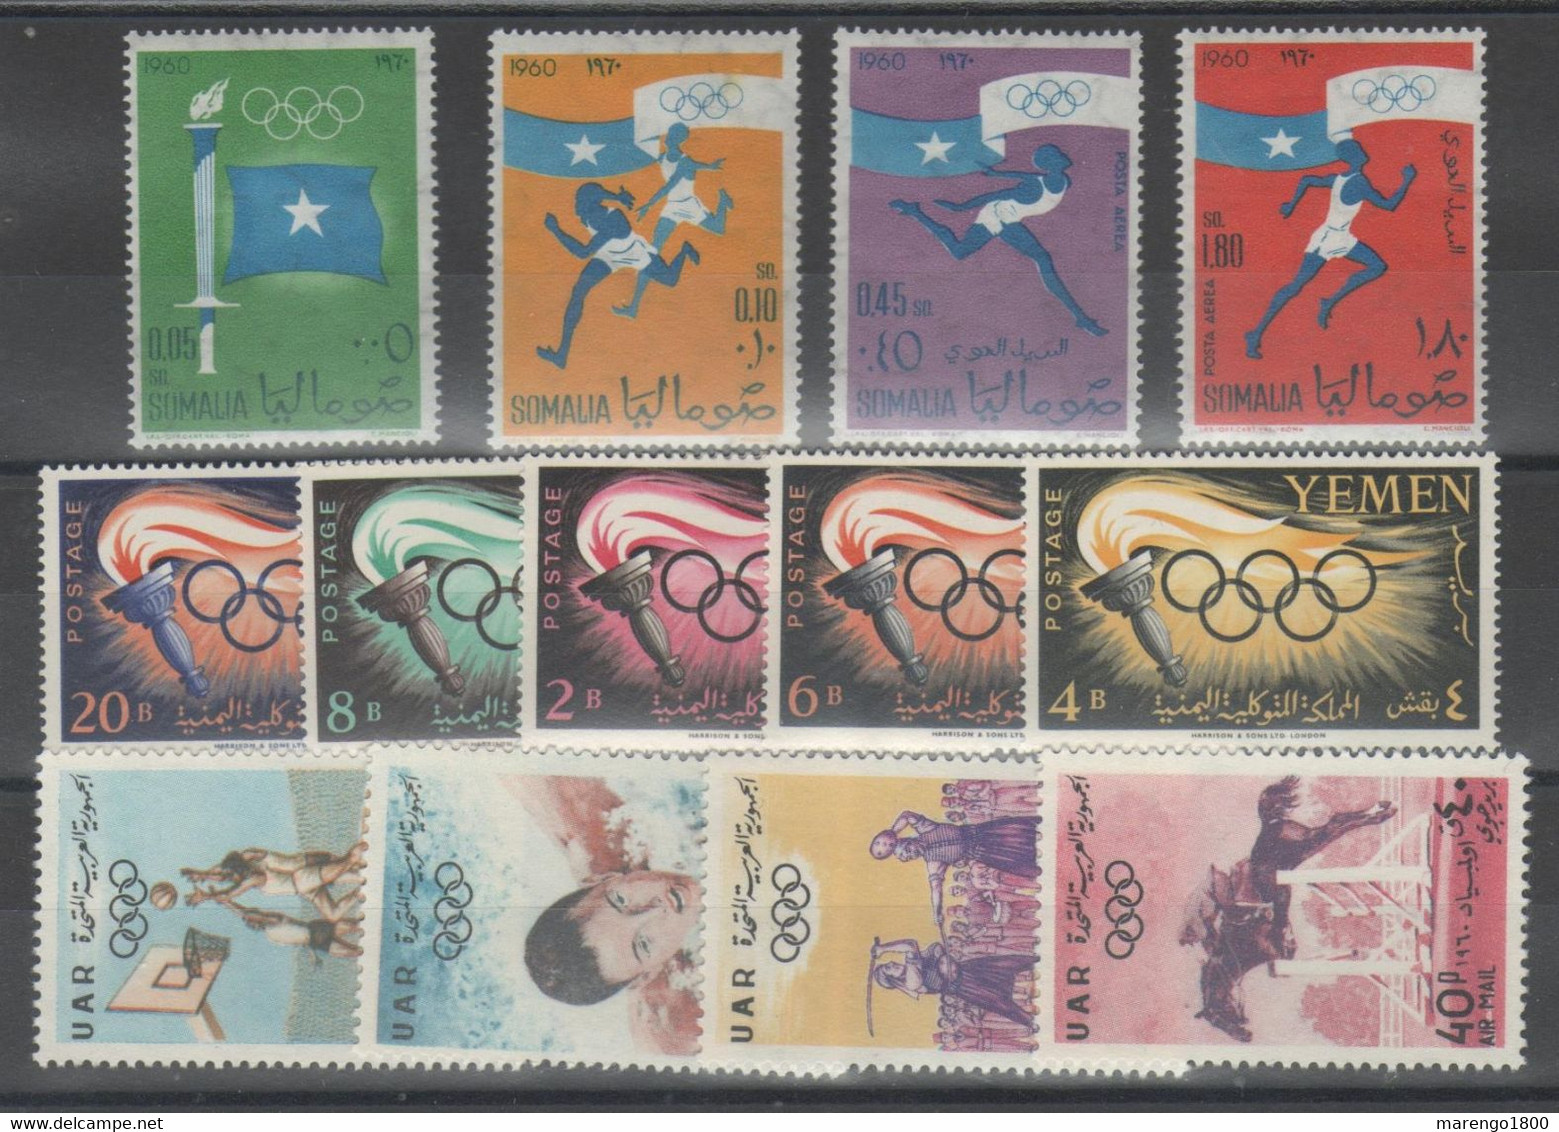 Olimpiadi Roma 1960 - Piccolo Lotto ** - Promo           (g9123) - Vrac (max 999 Timbres)